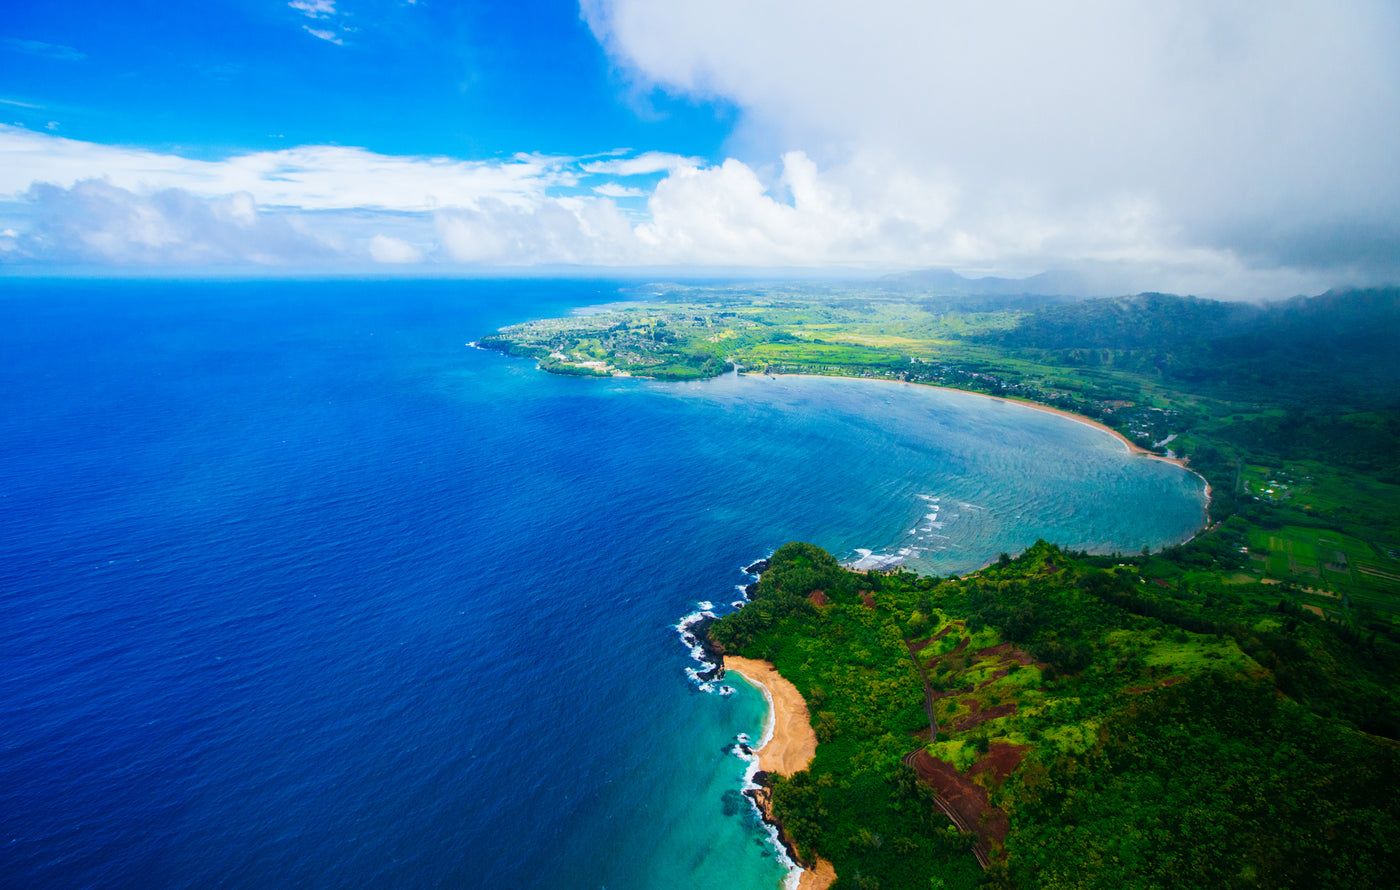 Heavenly Hanalei Bay / Kauai Island, Hawaii